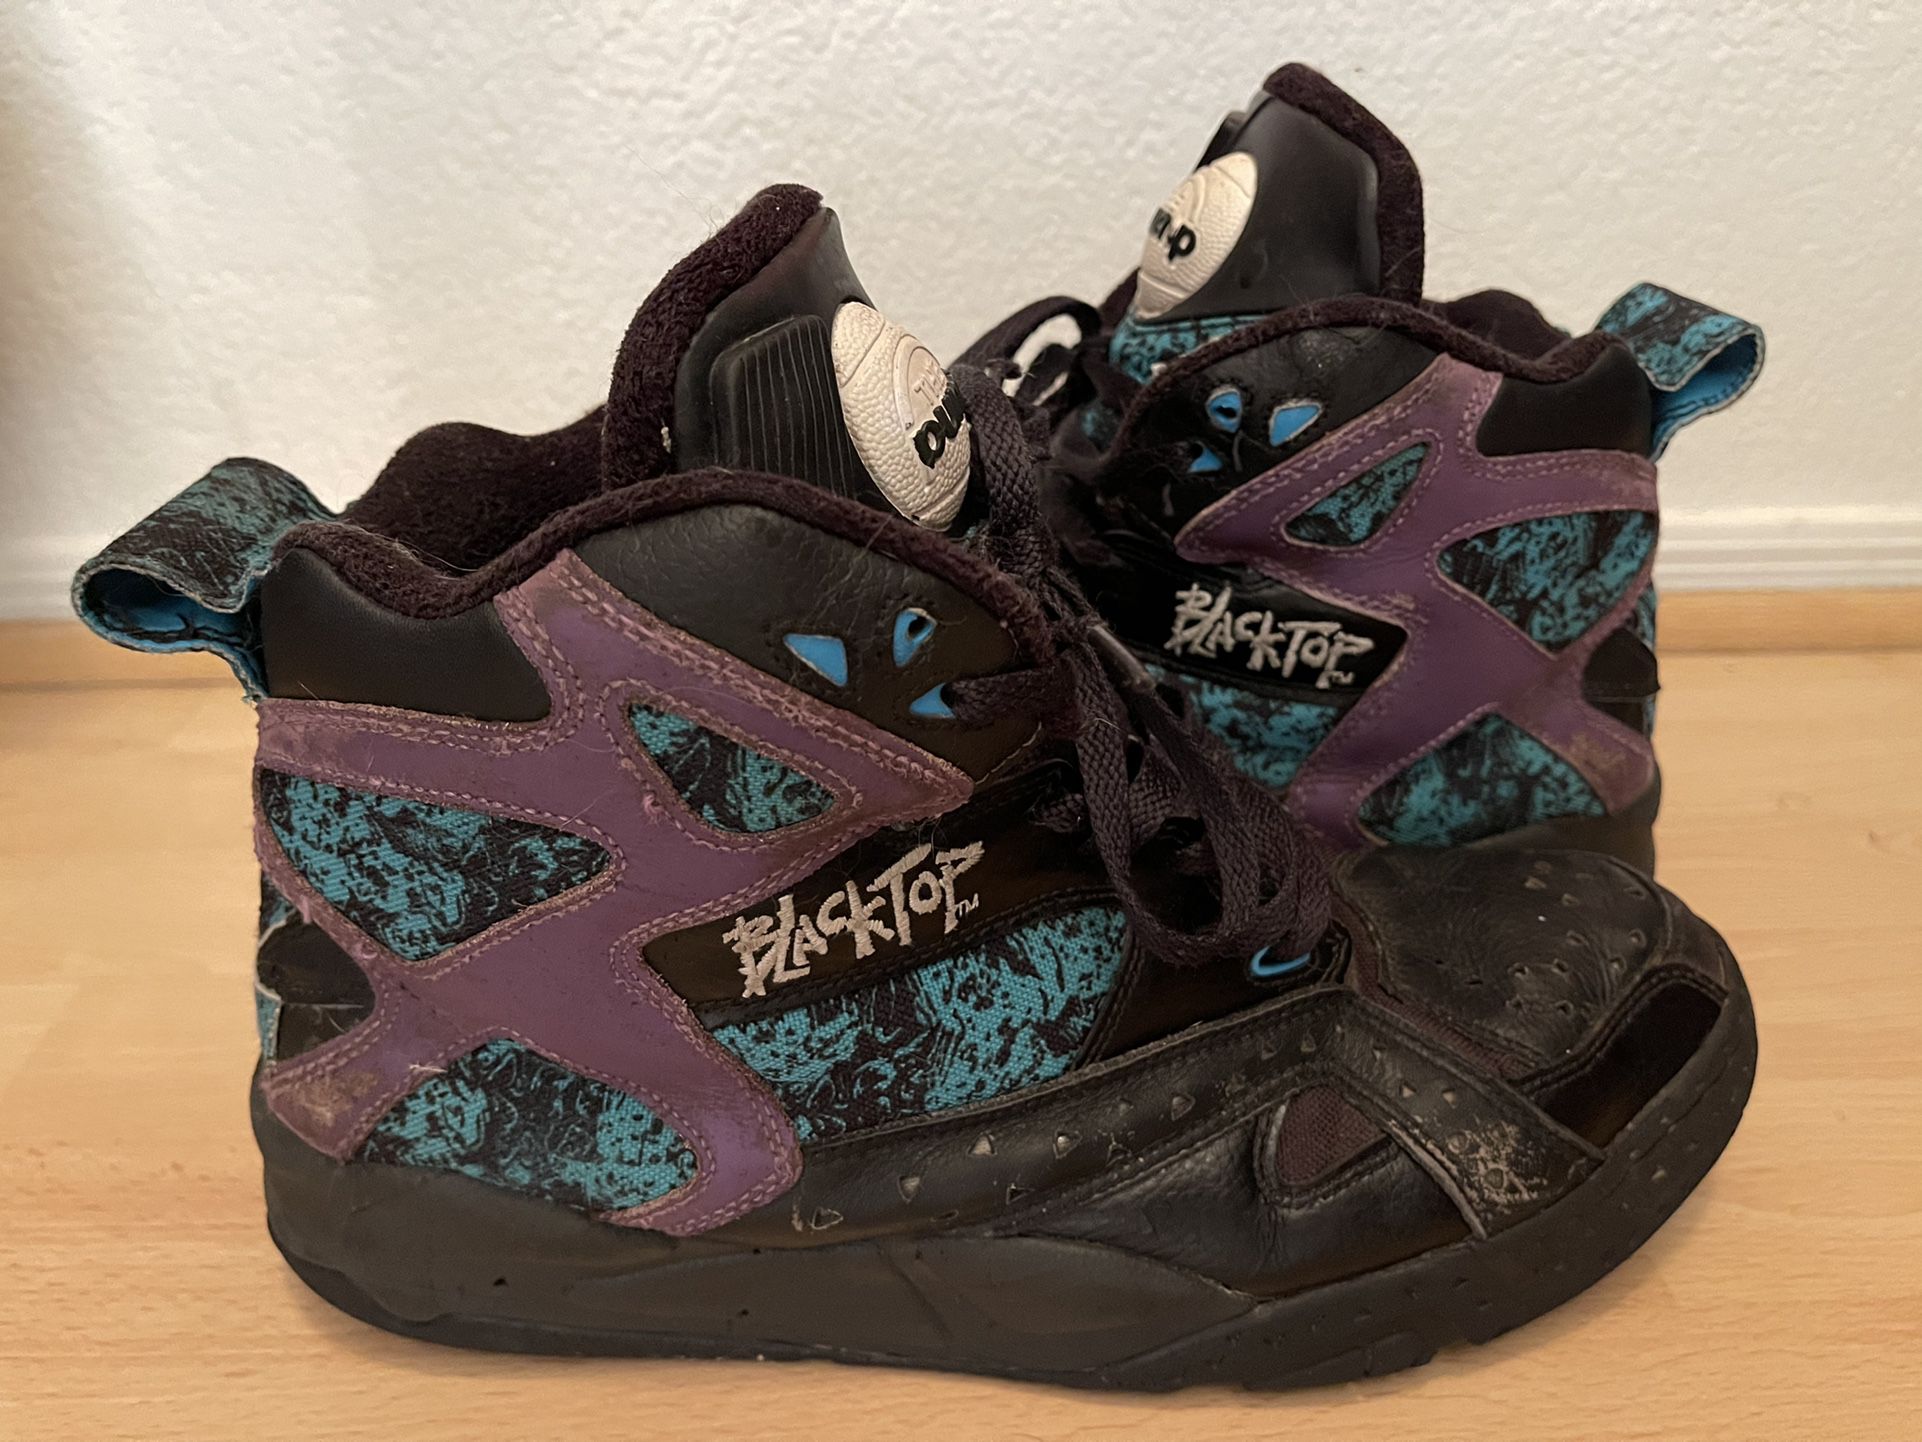 Reebok Blacktop Battleground (Sample Shoes!) Size 11.5 for Sale in Gilbert, AZ - OfferUp